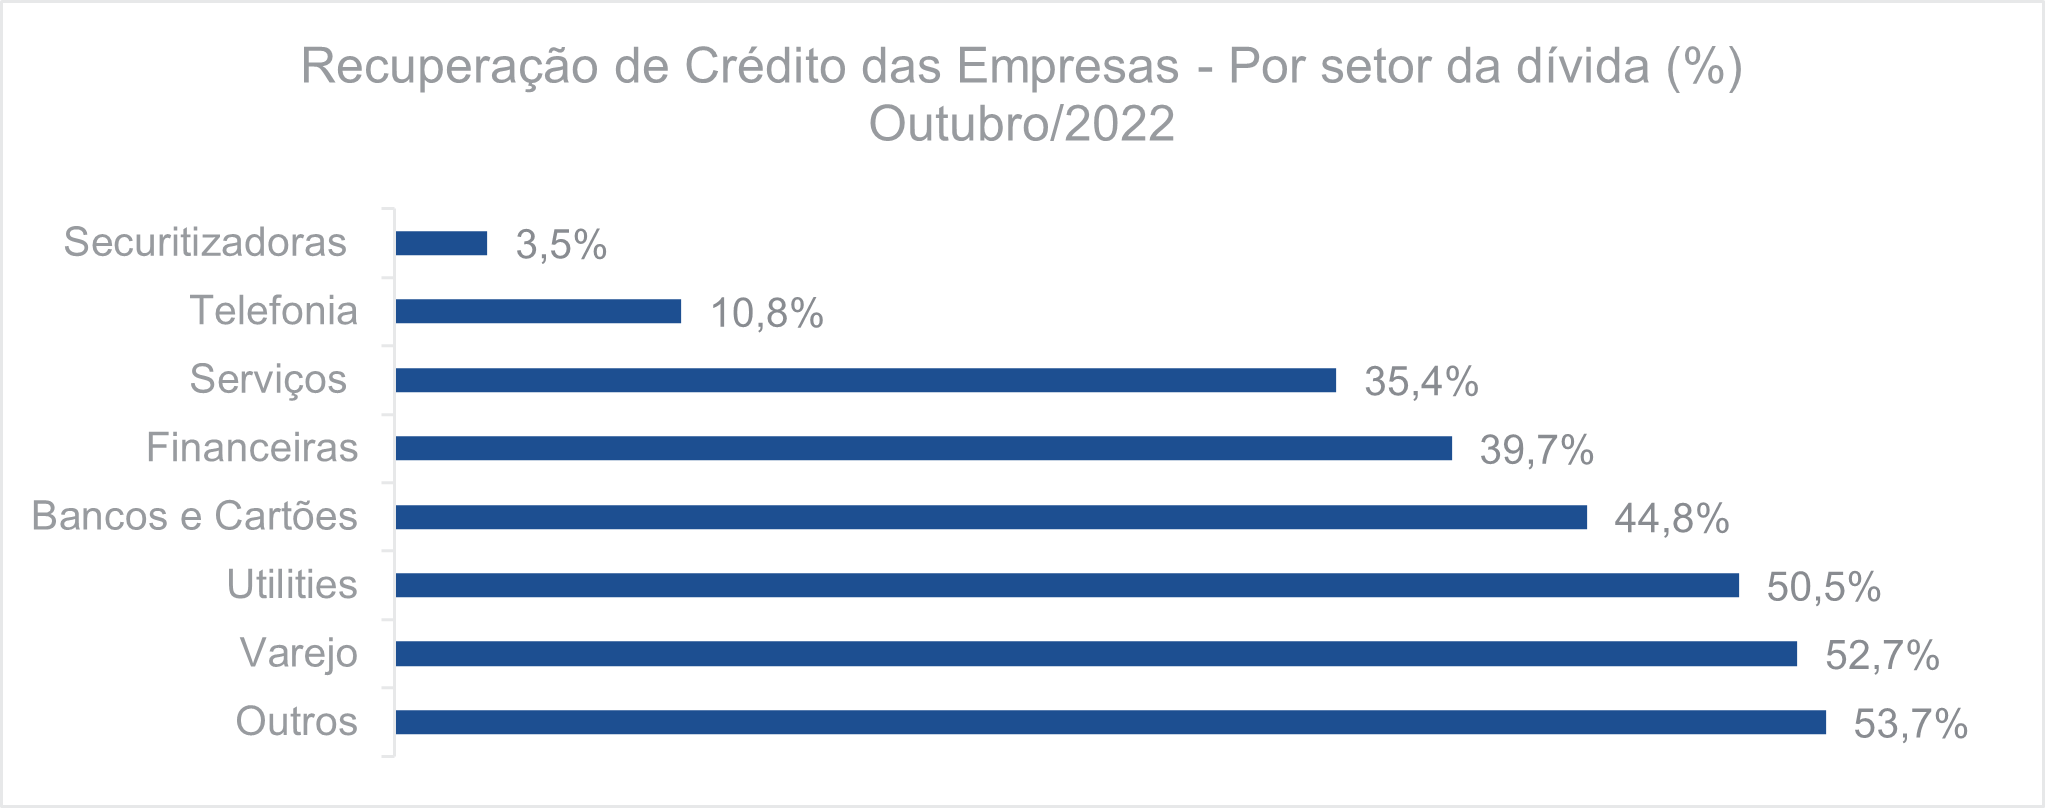 Recuperação de crédito das empresas Por setor da dívida Outubro 2022